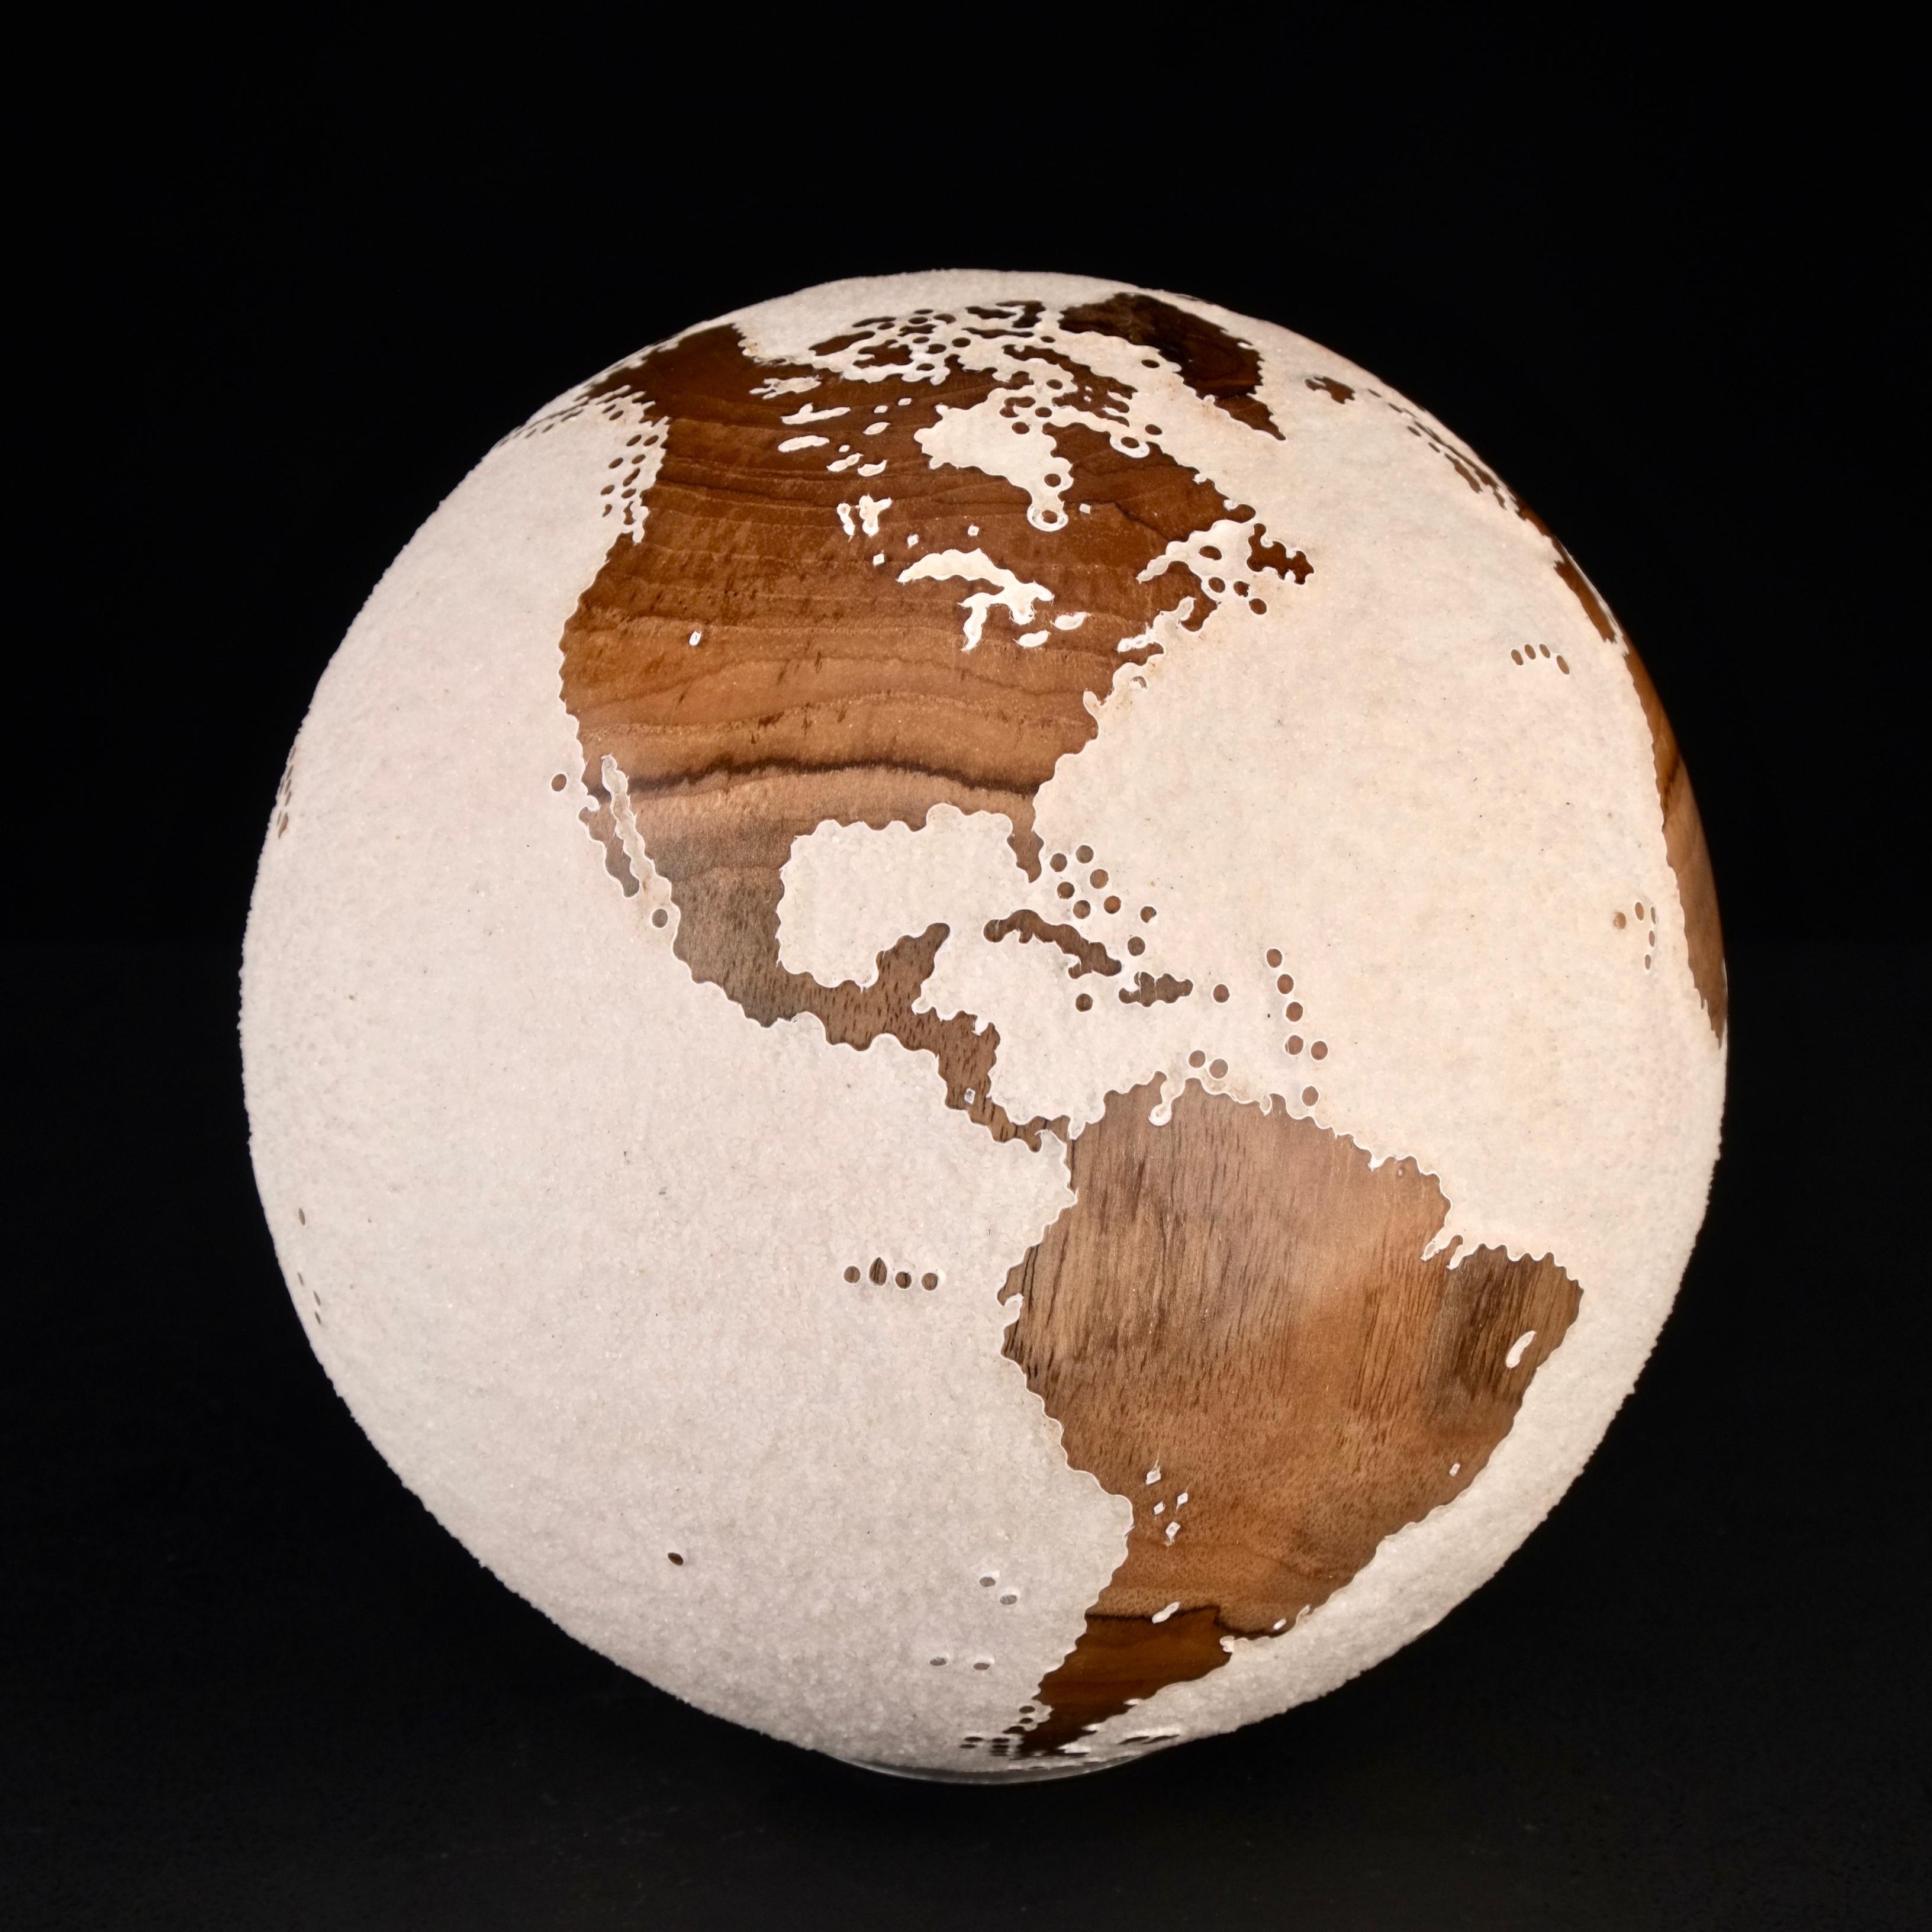 Le bois de teck et le sable de lave blanc font de ce magnifique globe tournant une véritable sculpture étonnante.
Réalisée à partir d'un morceau de bois entier, la sculpture est façonnée en fonction de la croissance de l'arbre.
Posée sur un socle